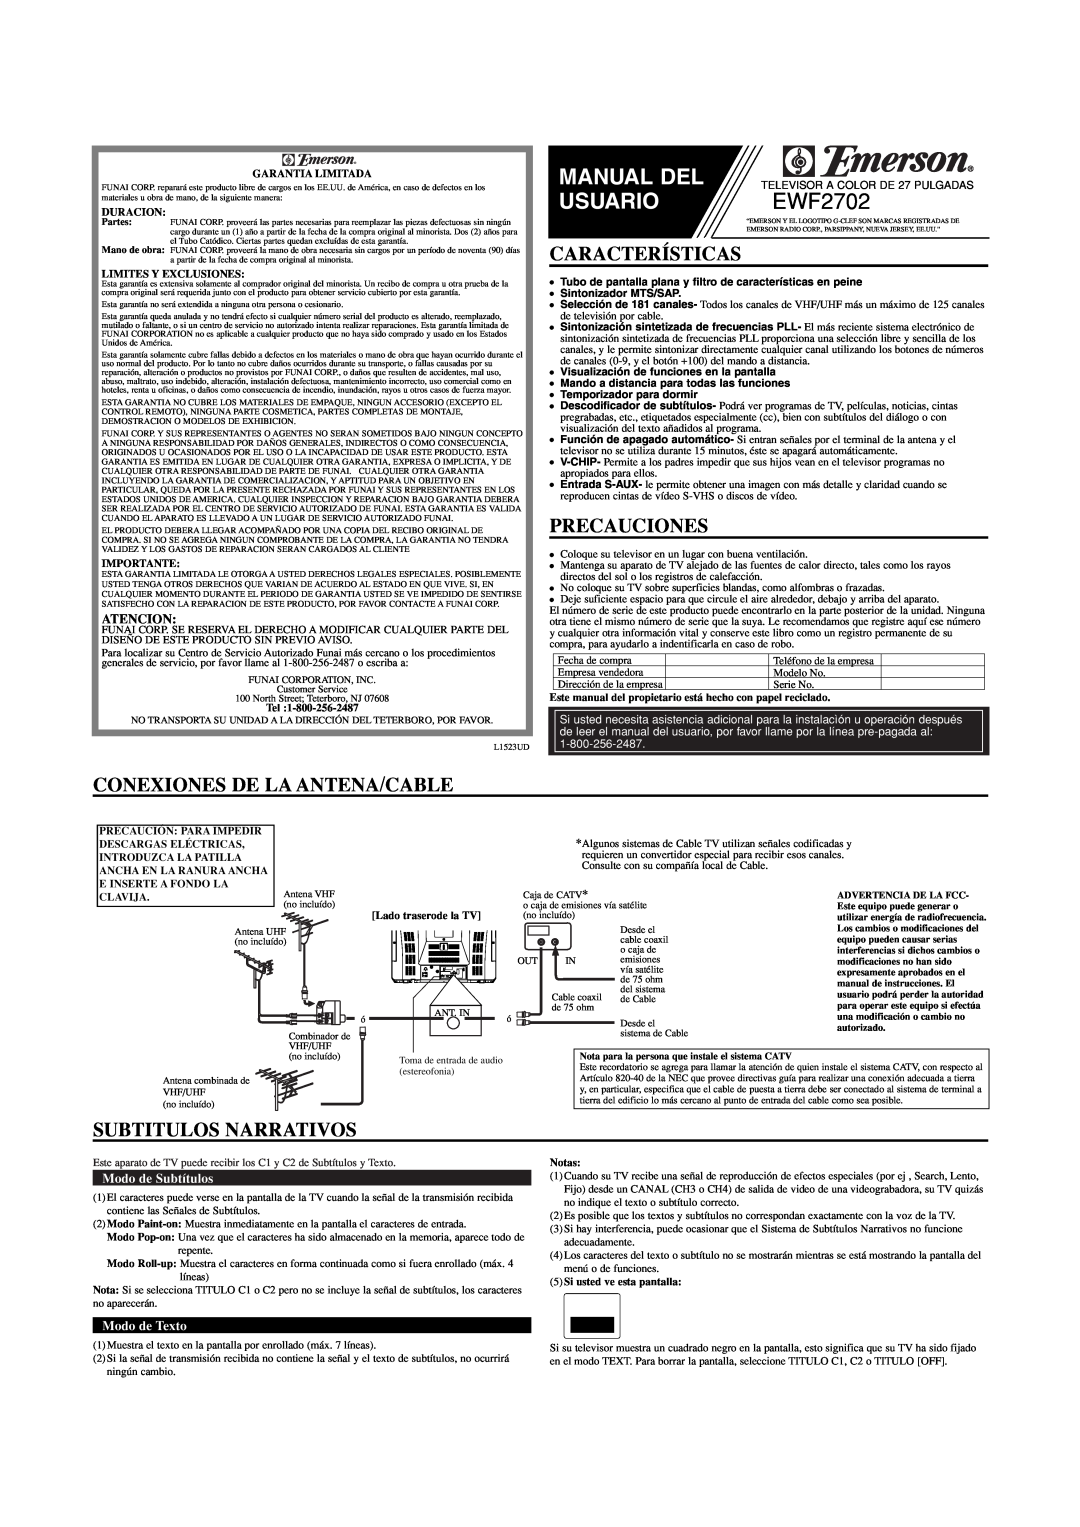 Emerson EWF2702 Características, Precauciones, Conexiones De La Antena/Cable, Subtitulos Narrativos, Atencion, Manual Del 